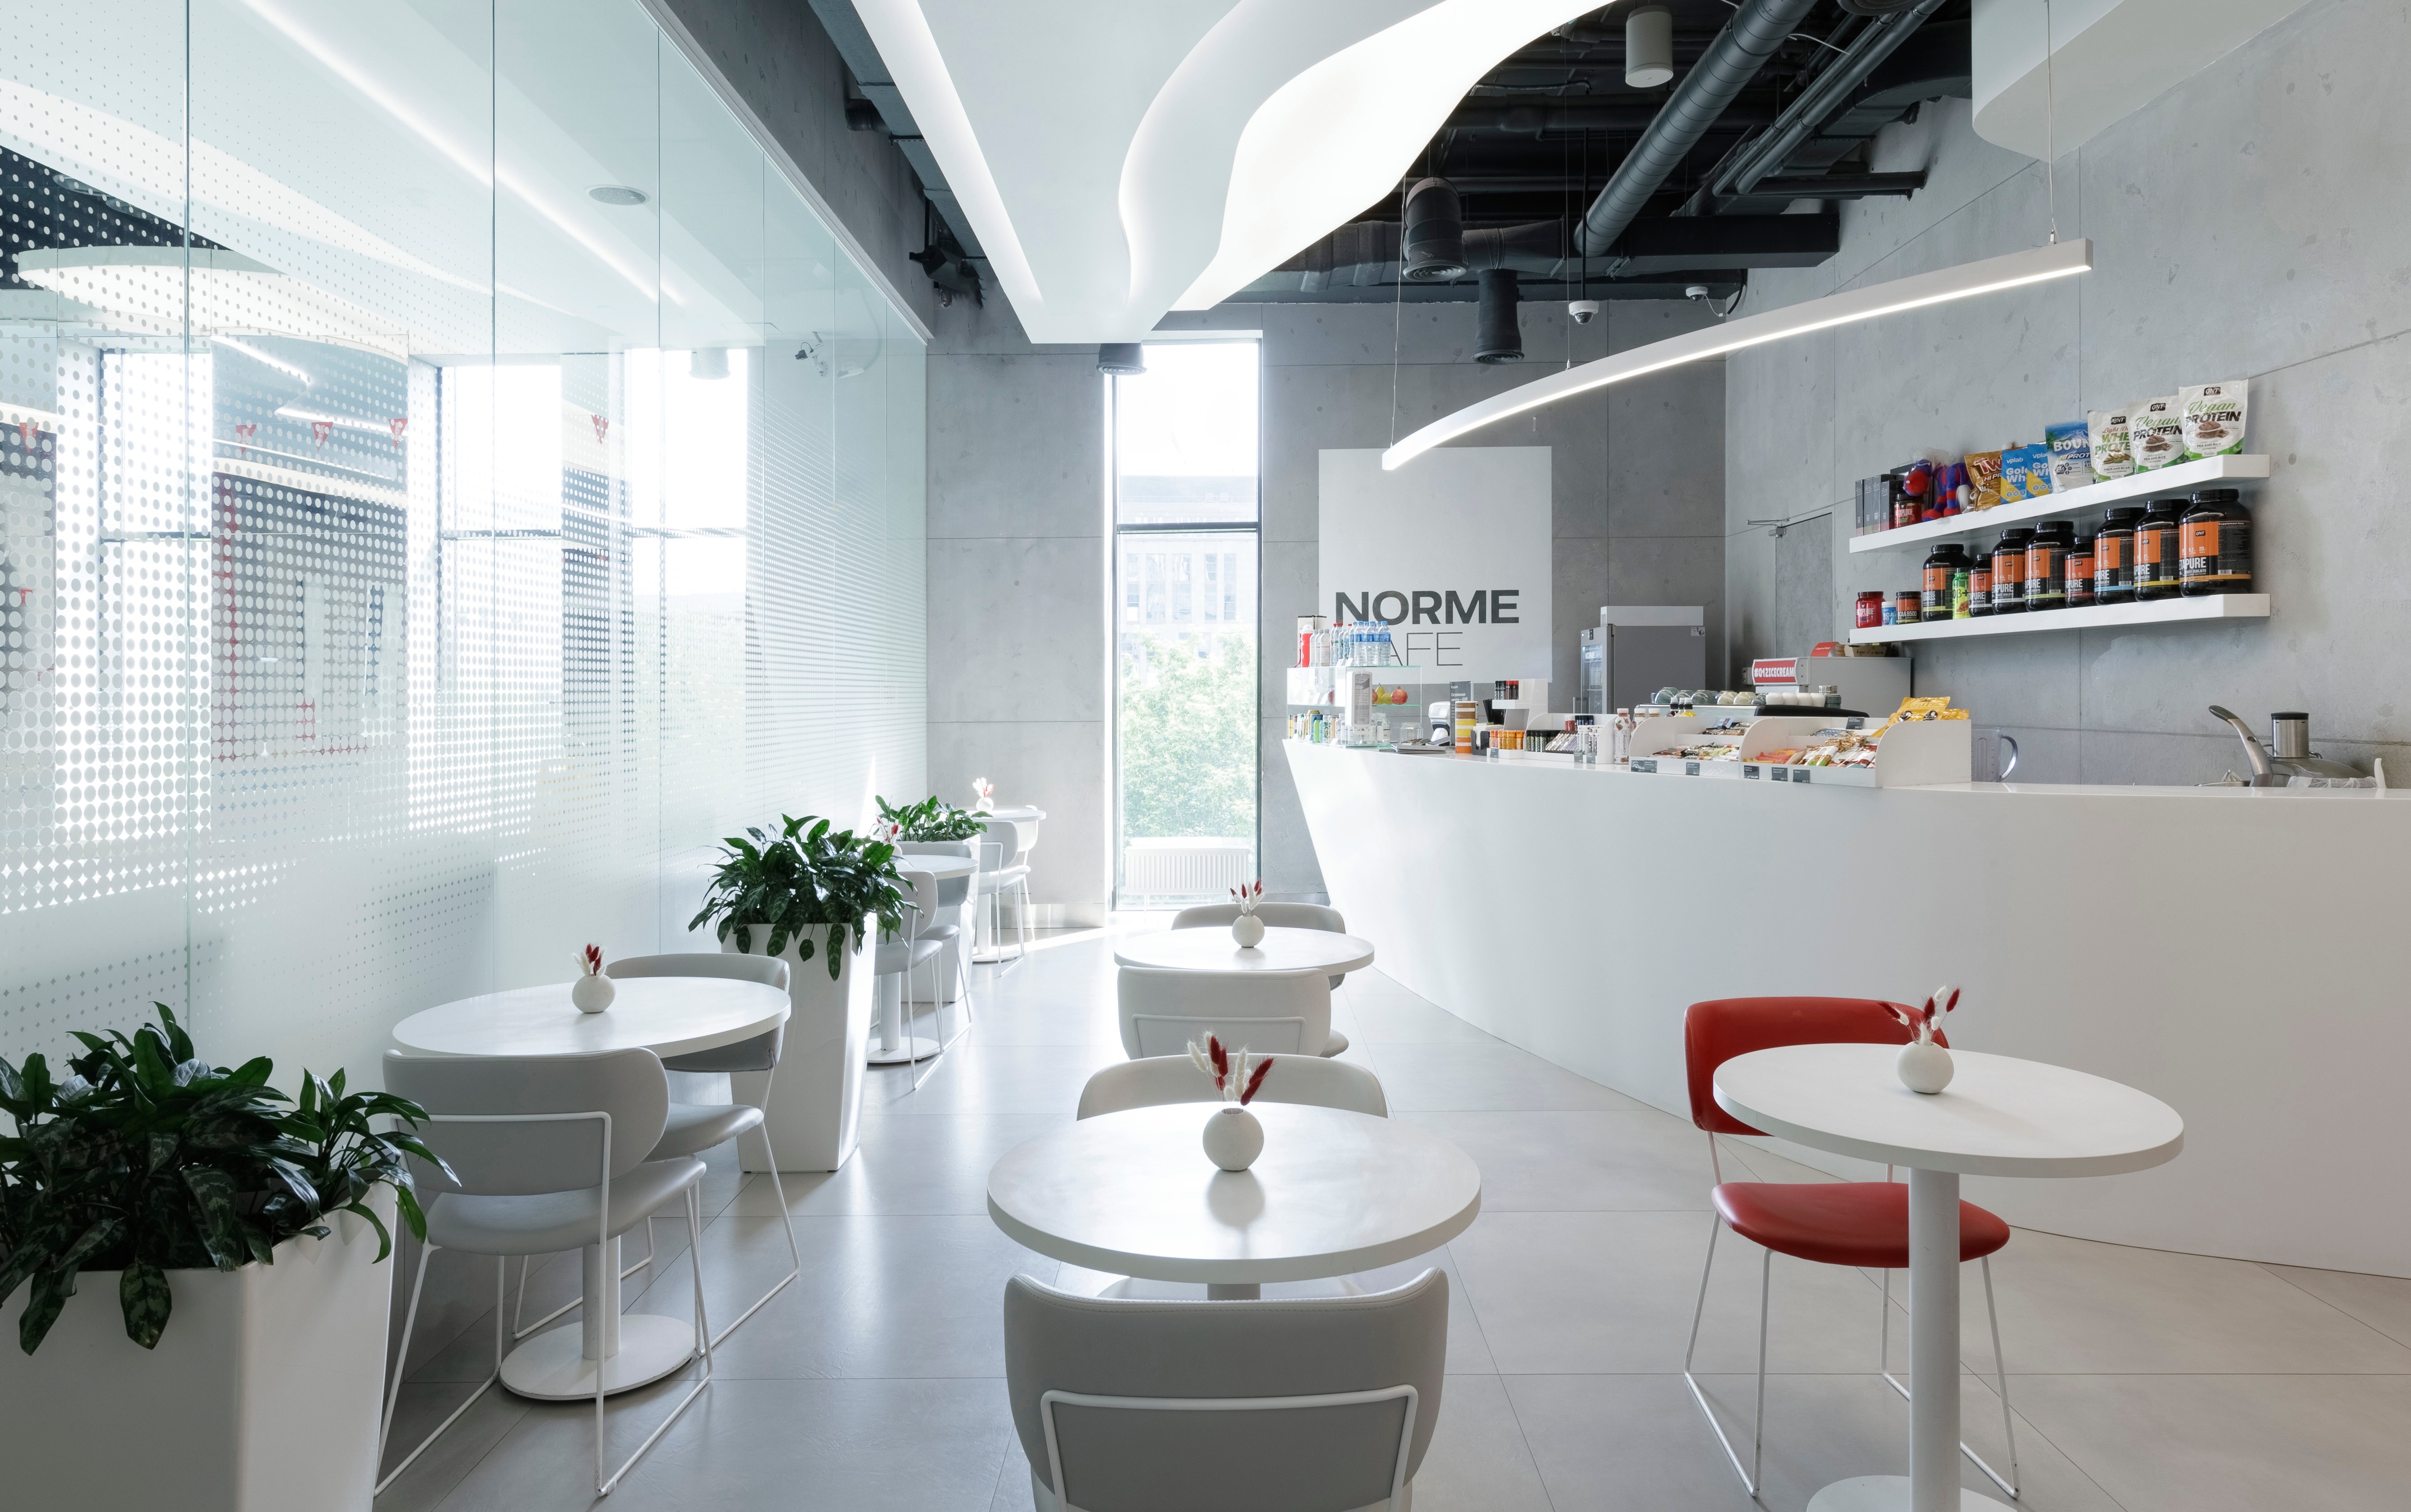 Norme Cafe с авторской кухней и specialty-кофе